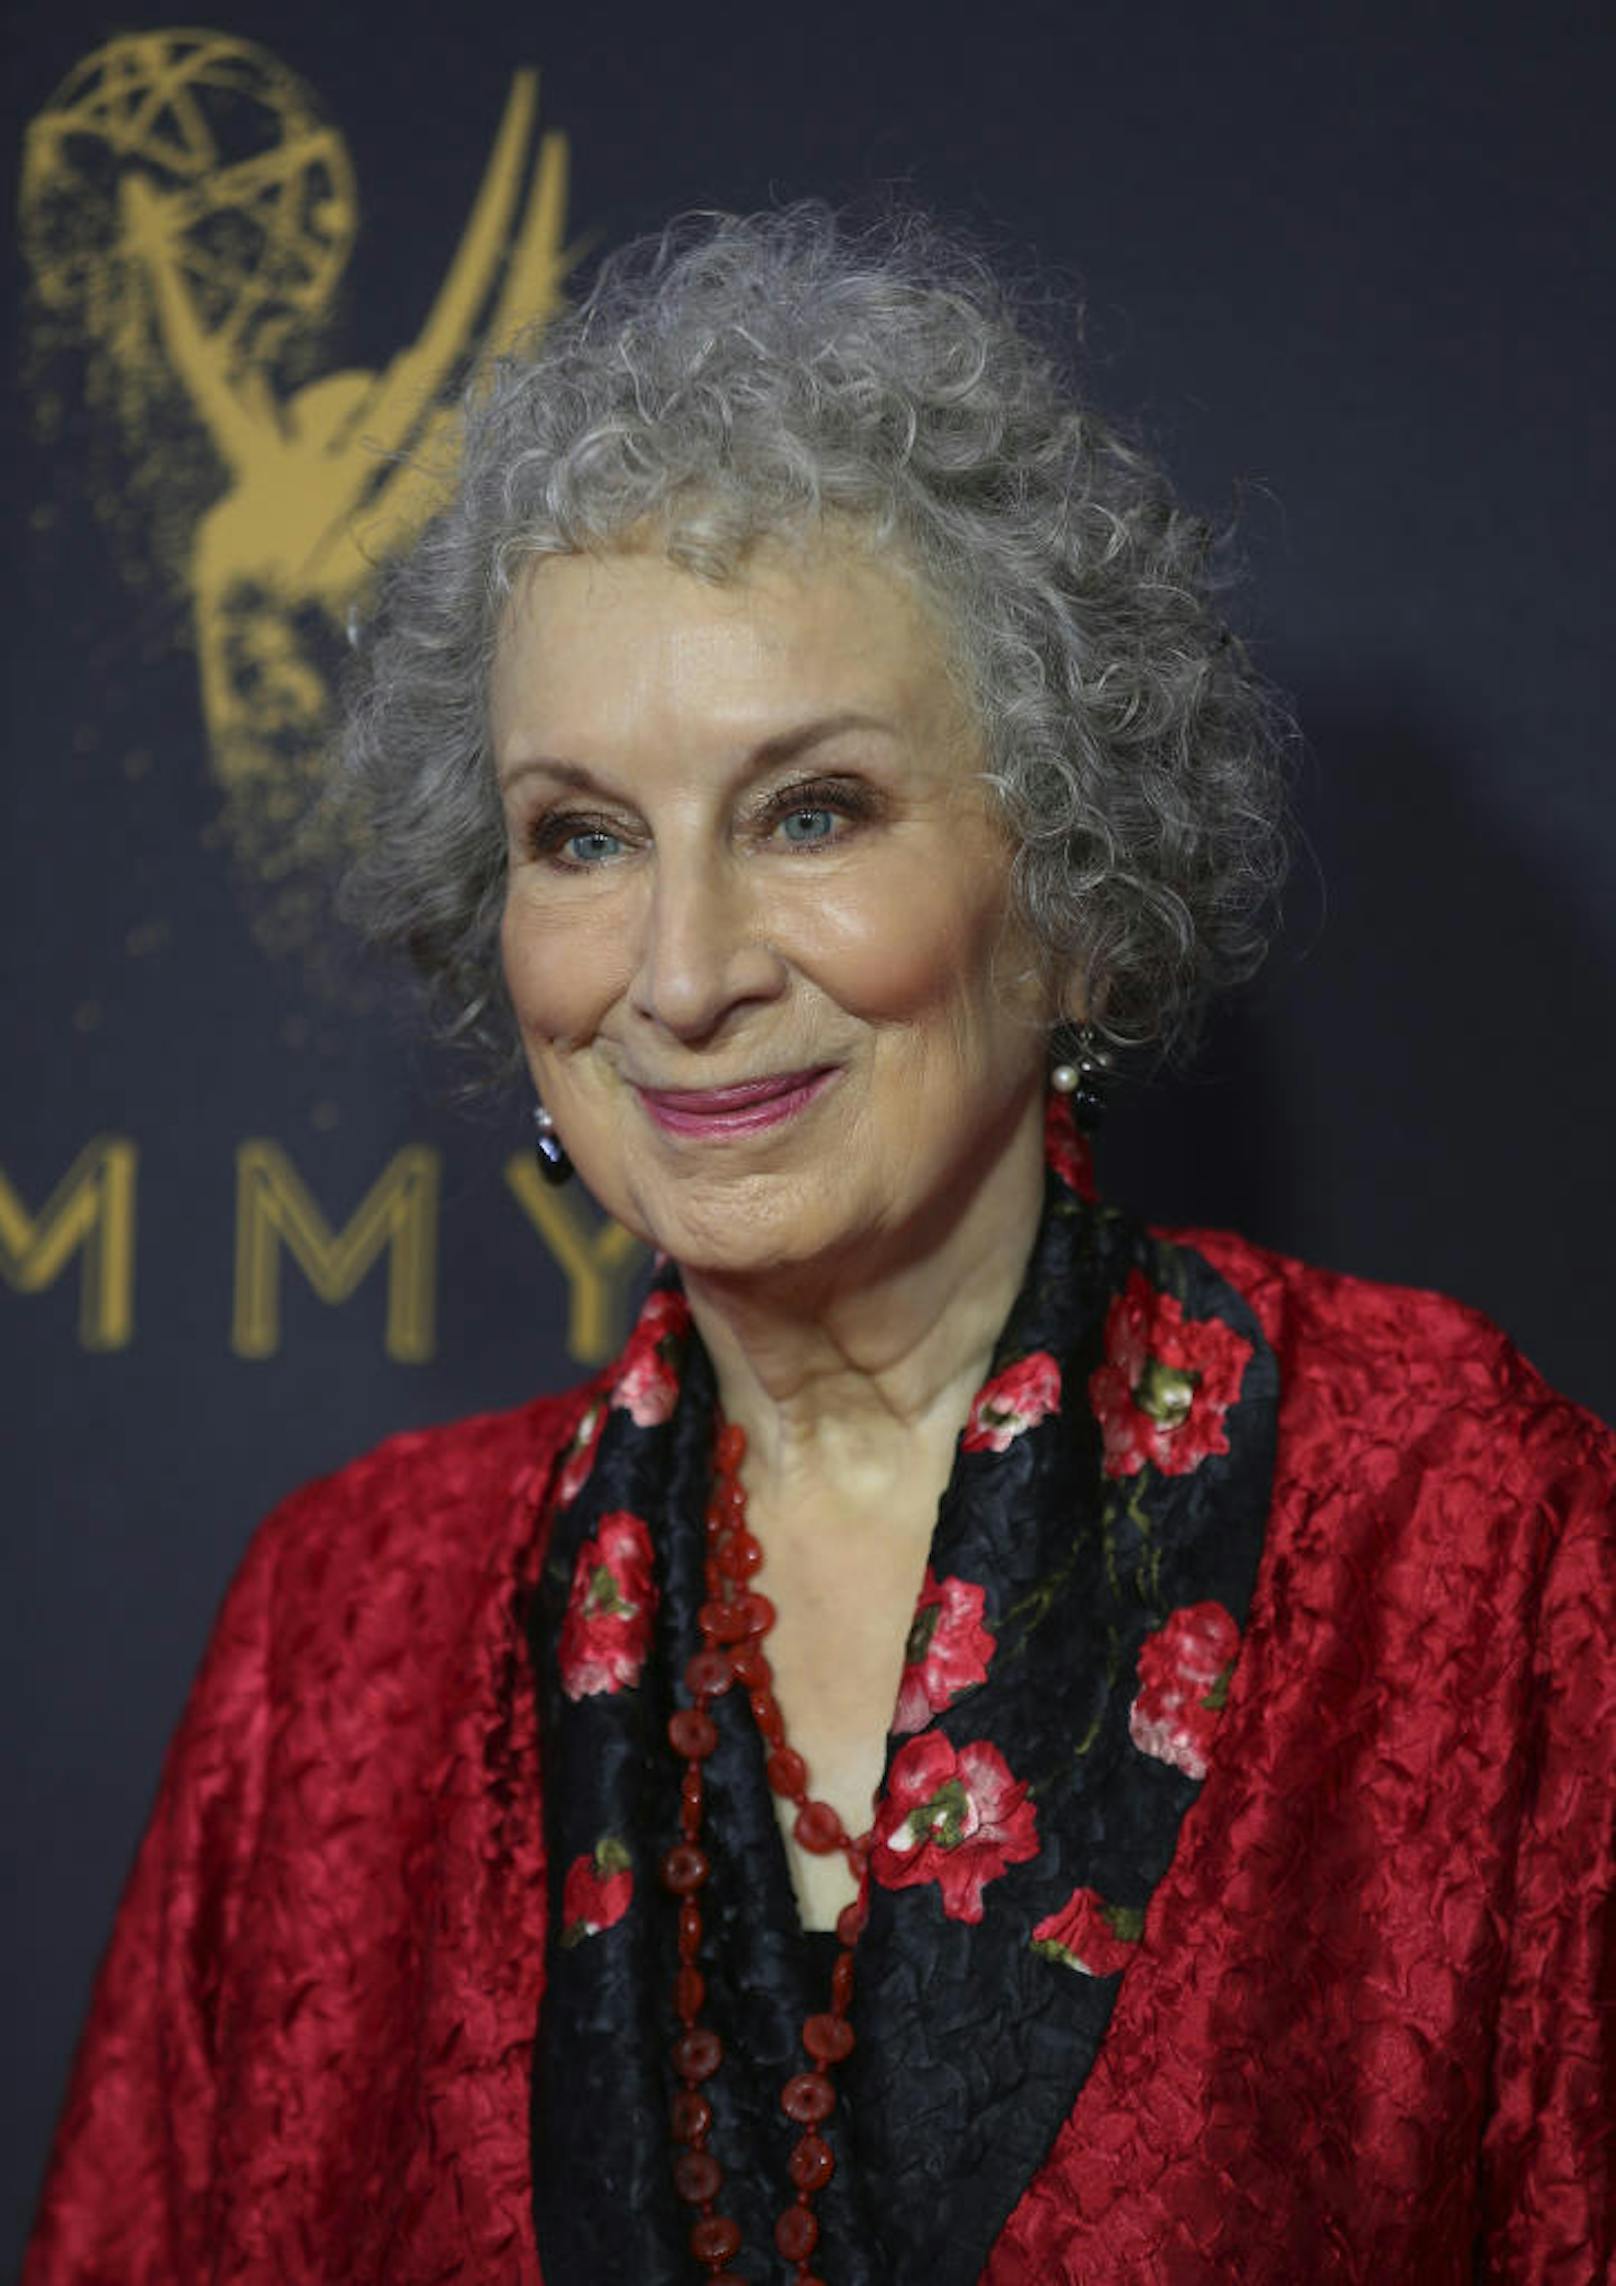 Autorin Margaret Atwood schrieb "Der Report der Magd", die Vorlage für "A Handmaid's Tale"